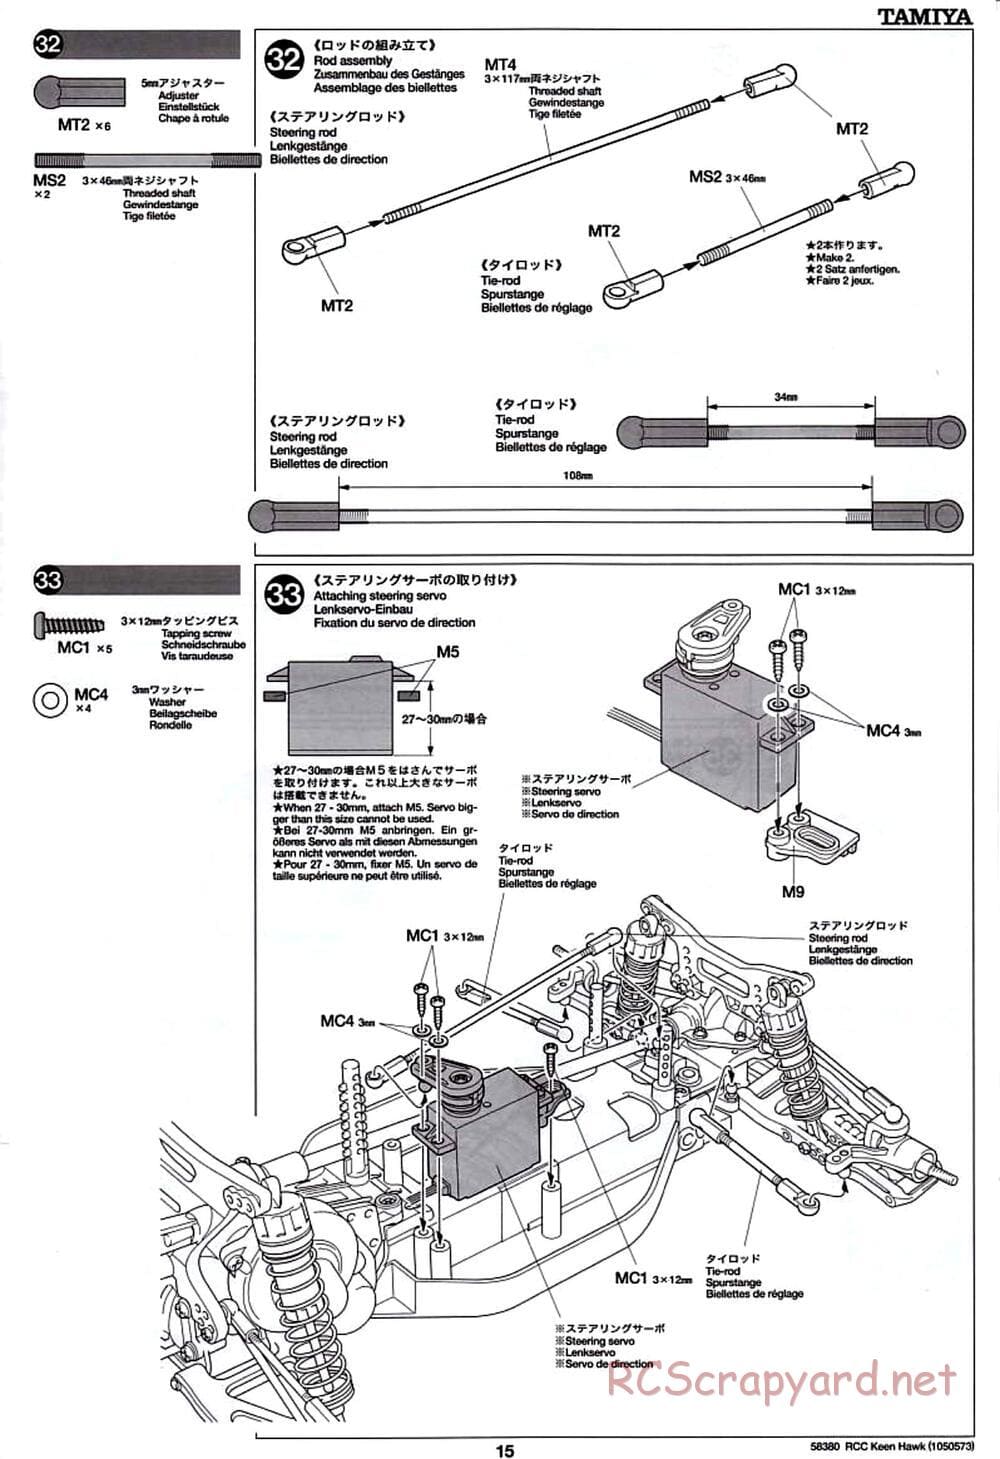 Tamiya - Keen Hawk Chassis - Manual - Page 15